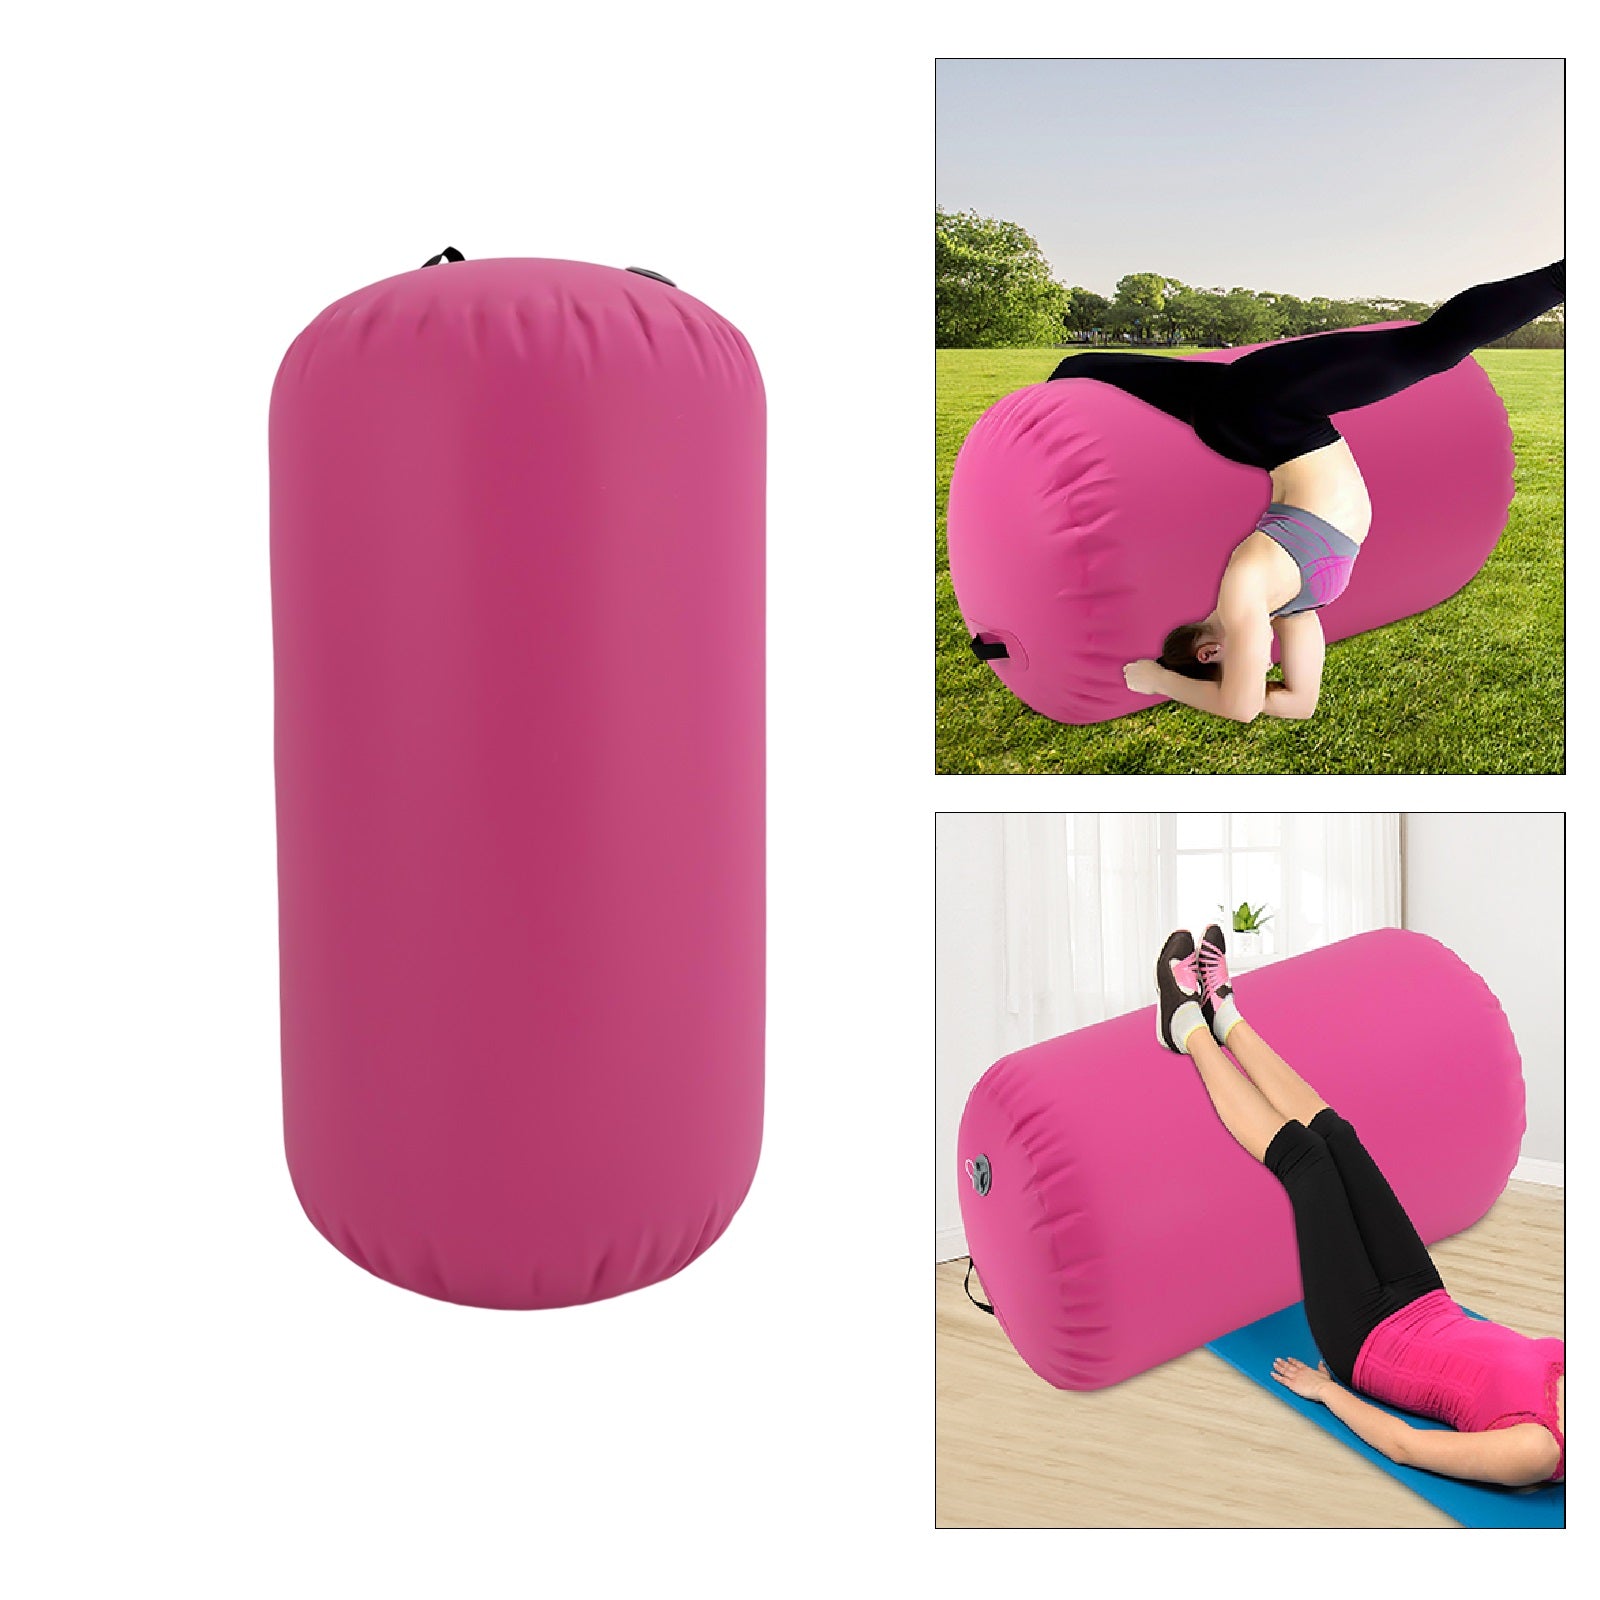 Rouleau de gymnastique gonflable en PVC avec pompe électrique pour entraînement, fitness, gymnastique, bodyshaping, 100 x 60 cm - Rose